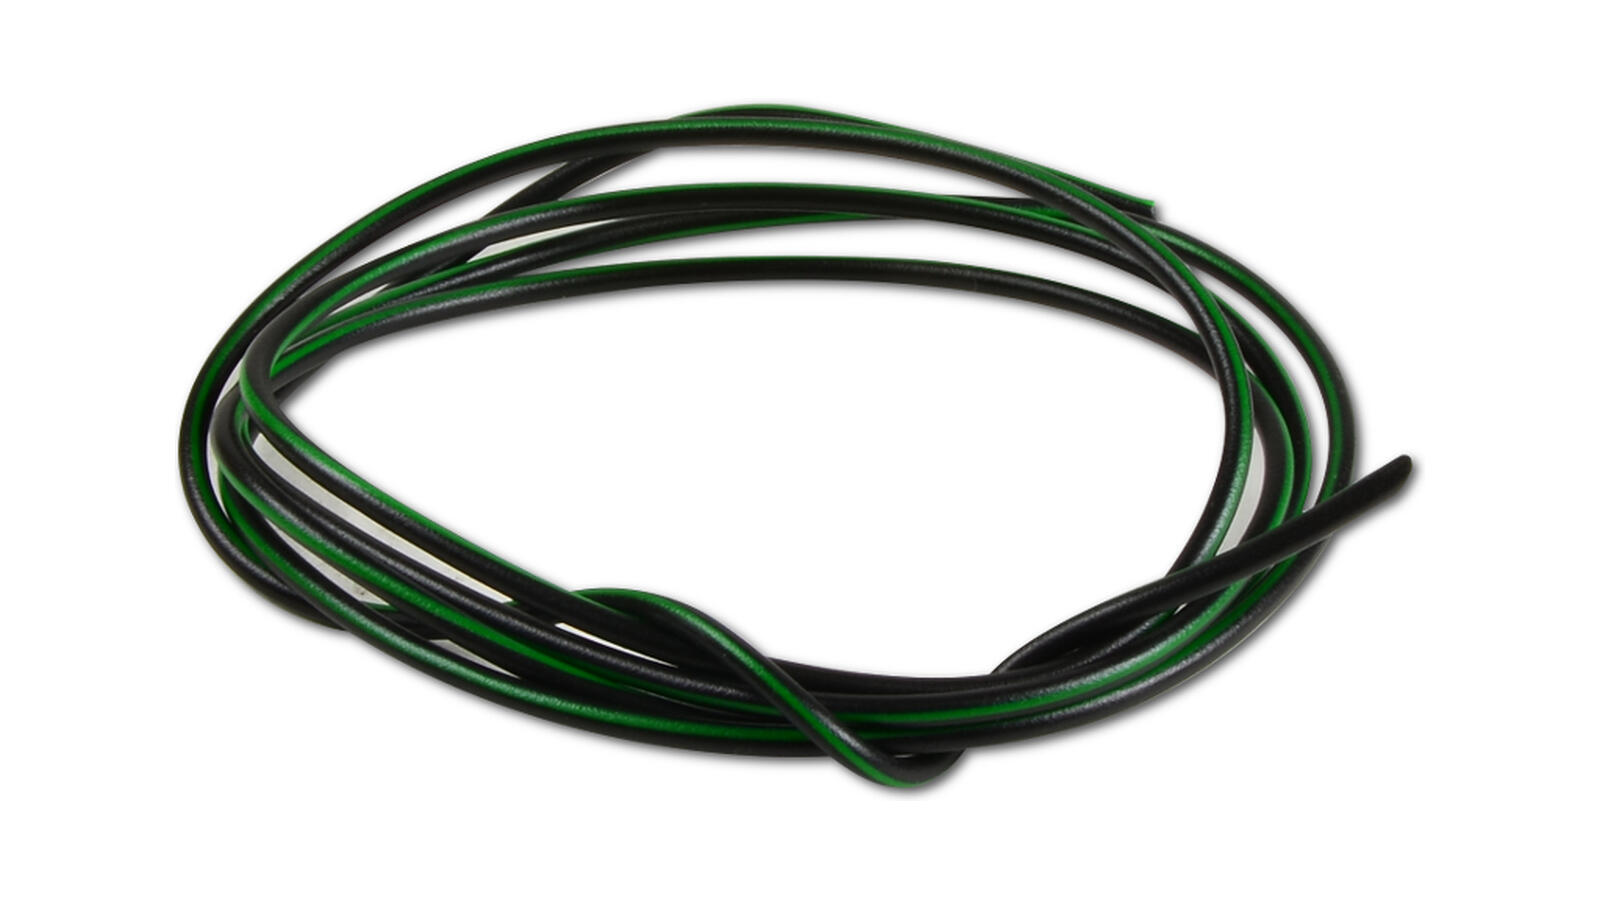 Kabel 1,5mm² 1m schwarz | grün